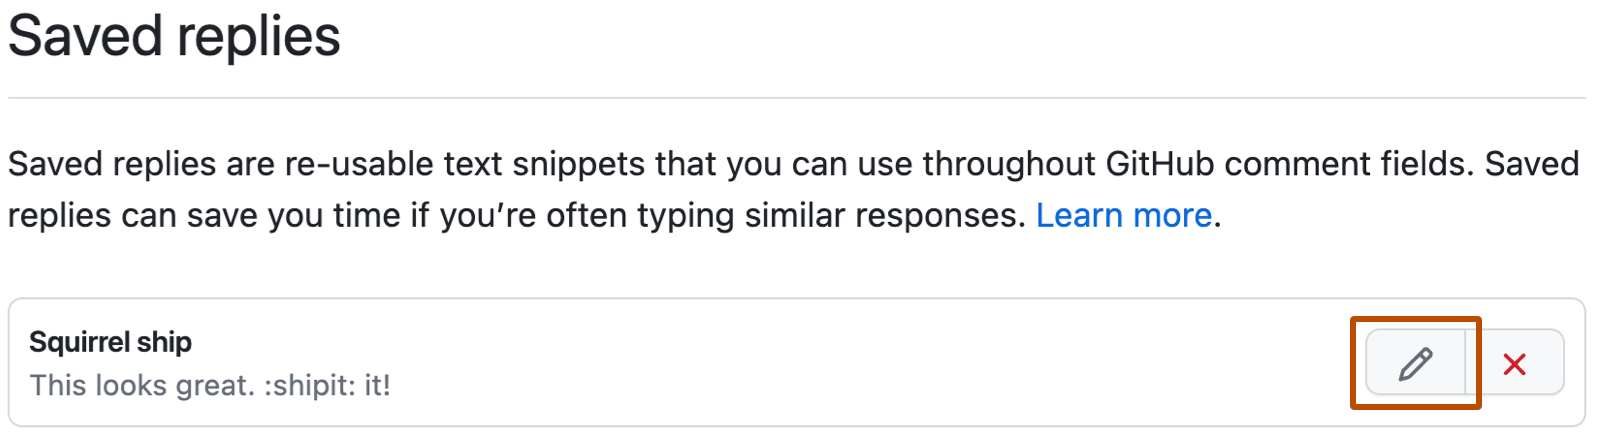 Capture d’écran des paramètres GitHub pour « Réponses enregistrées ». À droite de la réponse enregistrée « Ship squirrel », un bouton Modifier avec une icône de crayon est encadré en orange foncé.